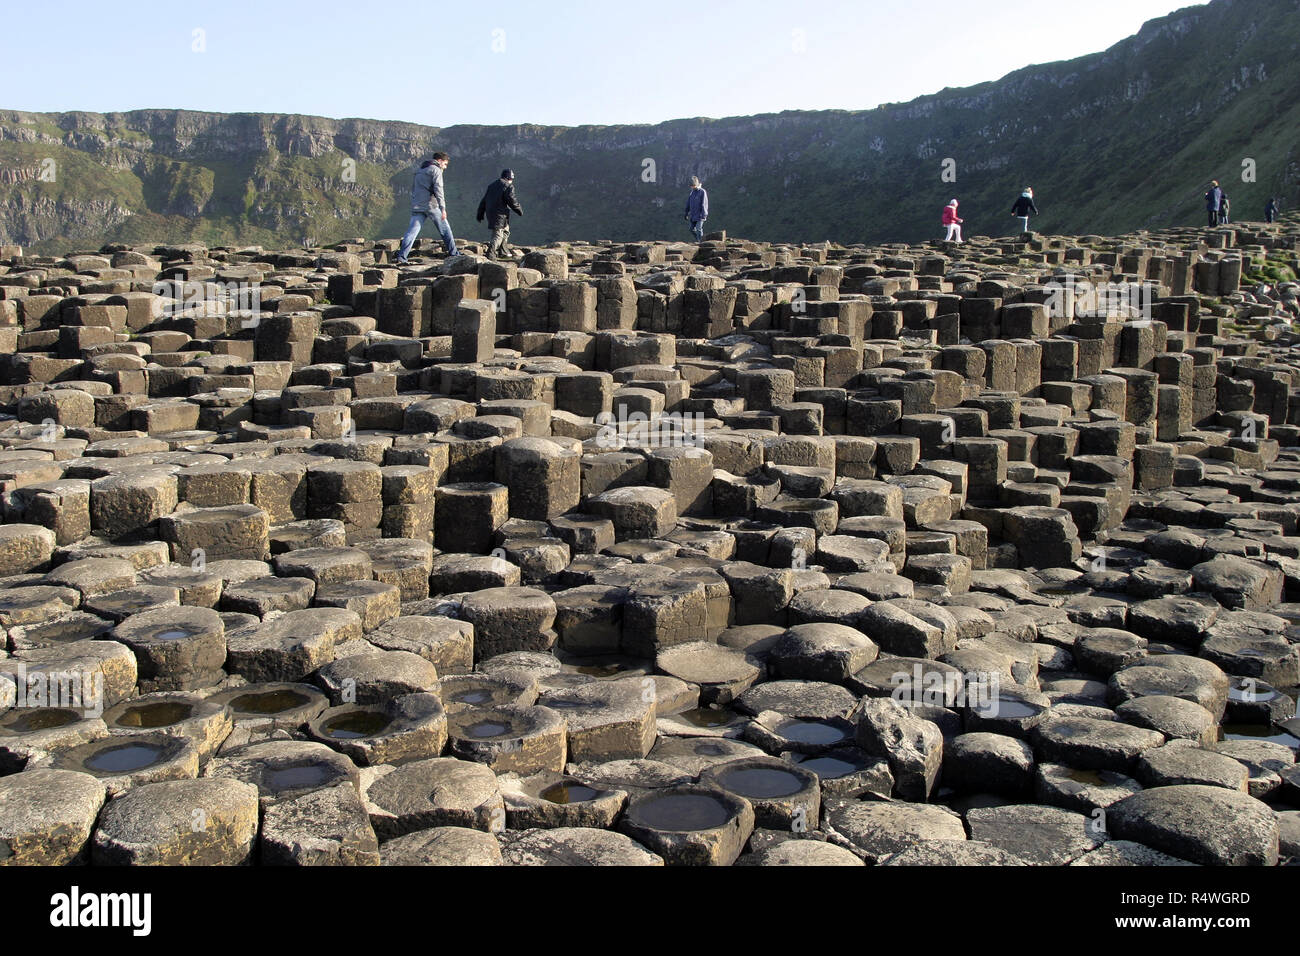 Les visiteurs et les touristes se promener sur la Chaussée des Géants, en Irlande du Nord, qui est 40 000 colonnes de basalte, enclenchement, qui a émergé après une énorme éruption volcanique, il y a de nombreuses années. C'est un site du patrimoine mondial de l'UNESCO et est visité par des milliers de personnes chaque année. Banque D'Images